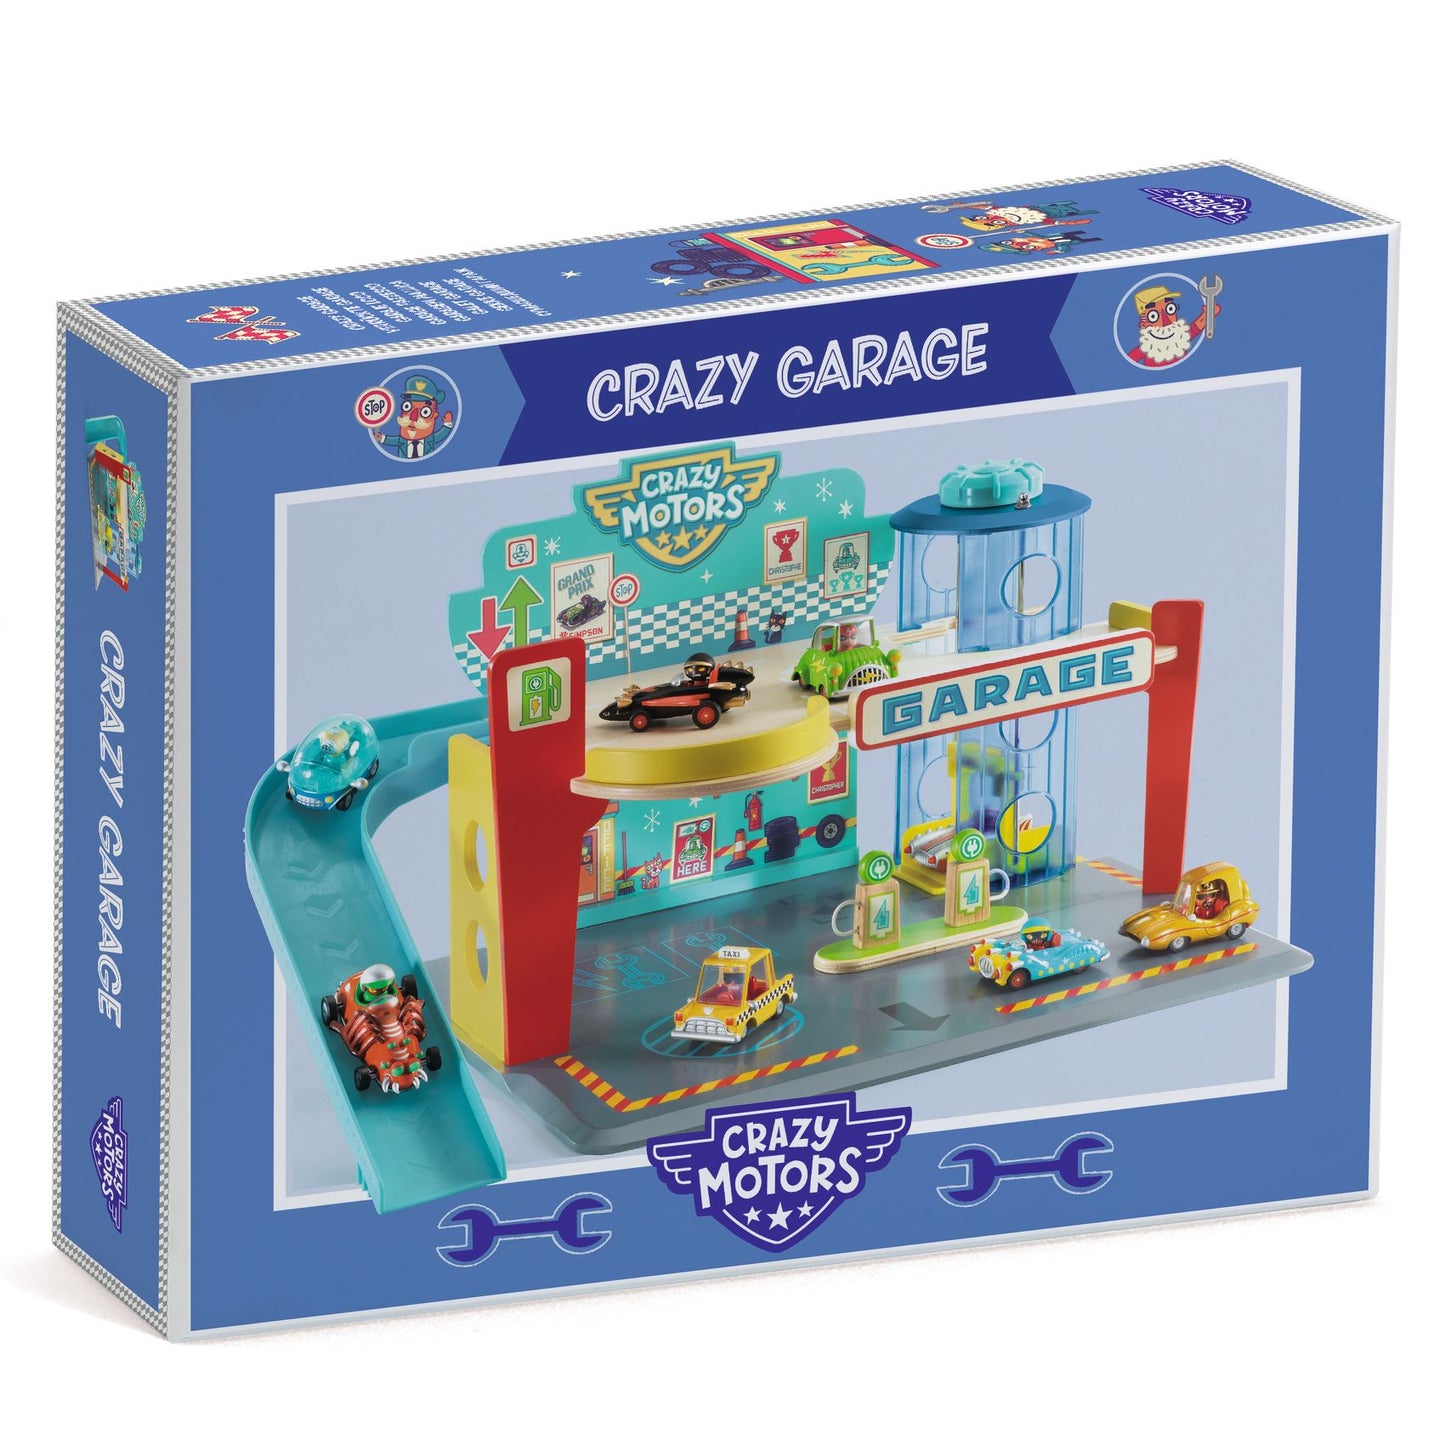 Garage Crazy Motors